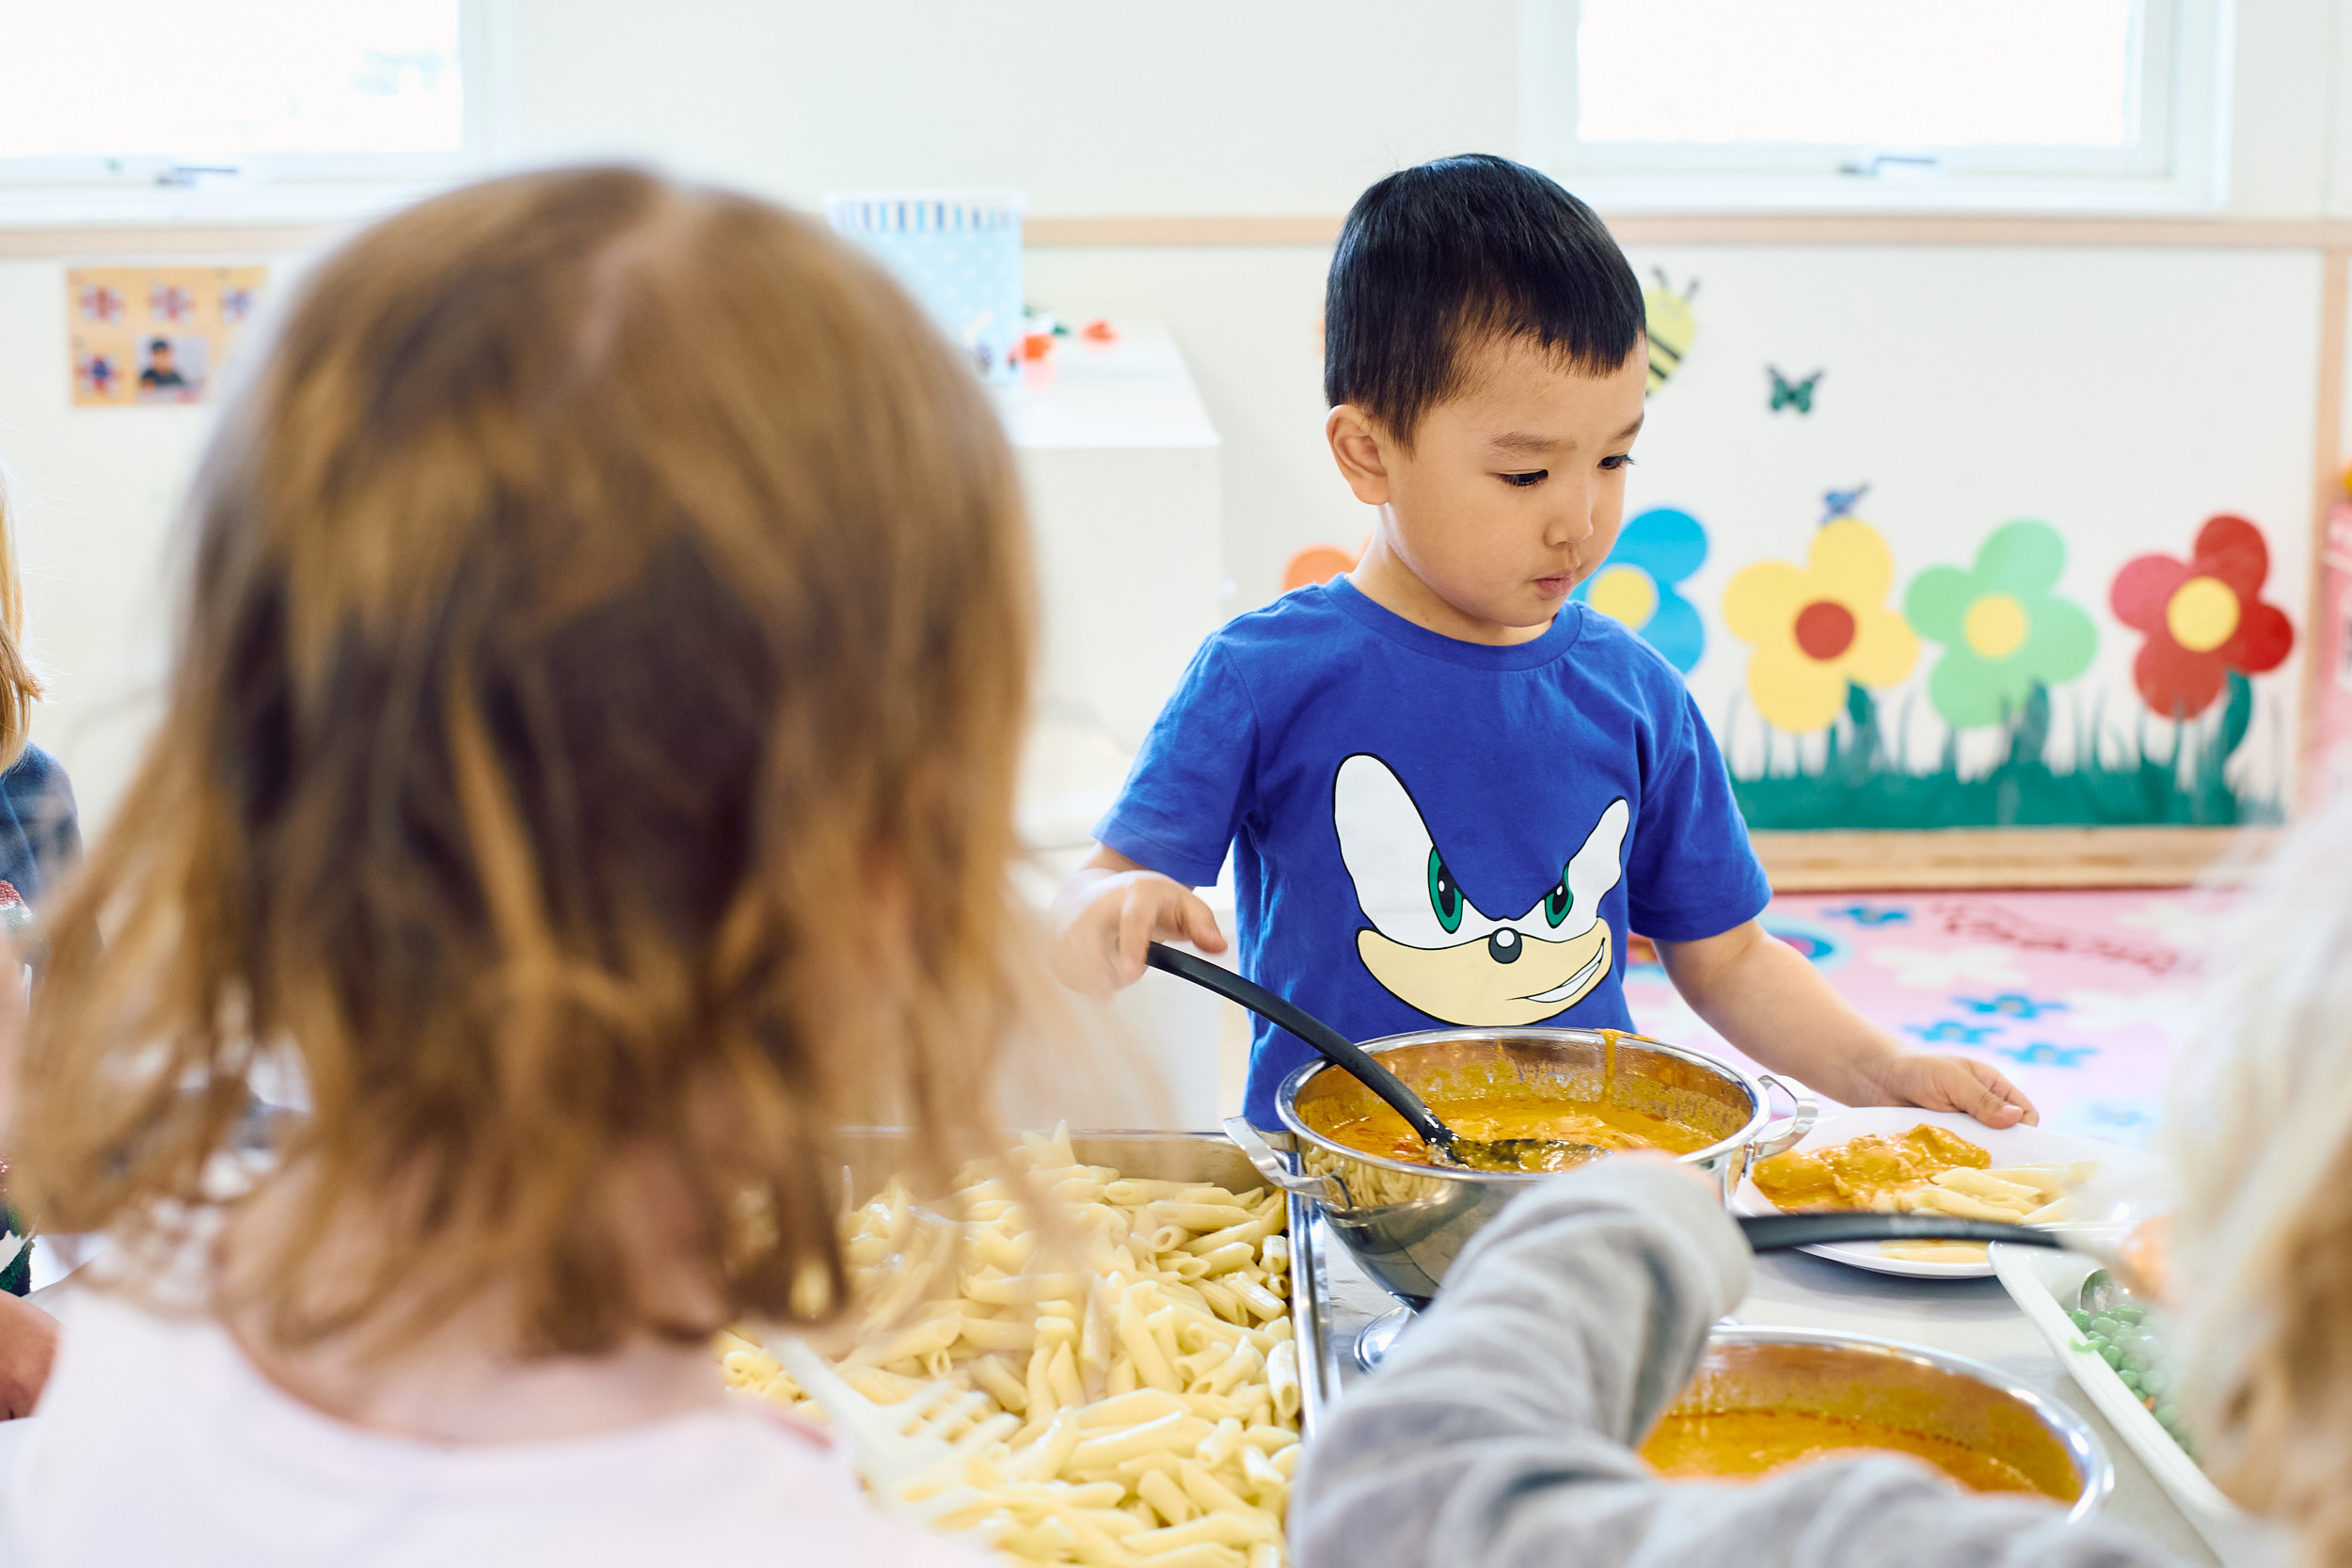 Förskolebarns bakhuvud syns i förgrunden. Längre in står en pojke i blå tröja och tar mat från en skål.